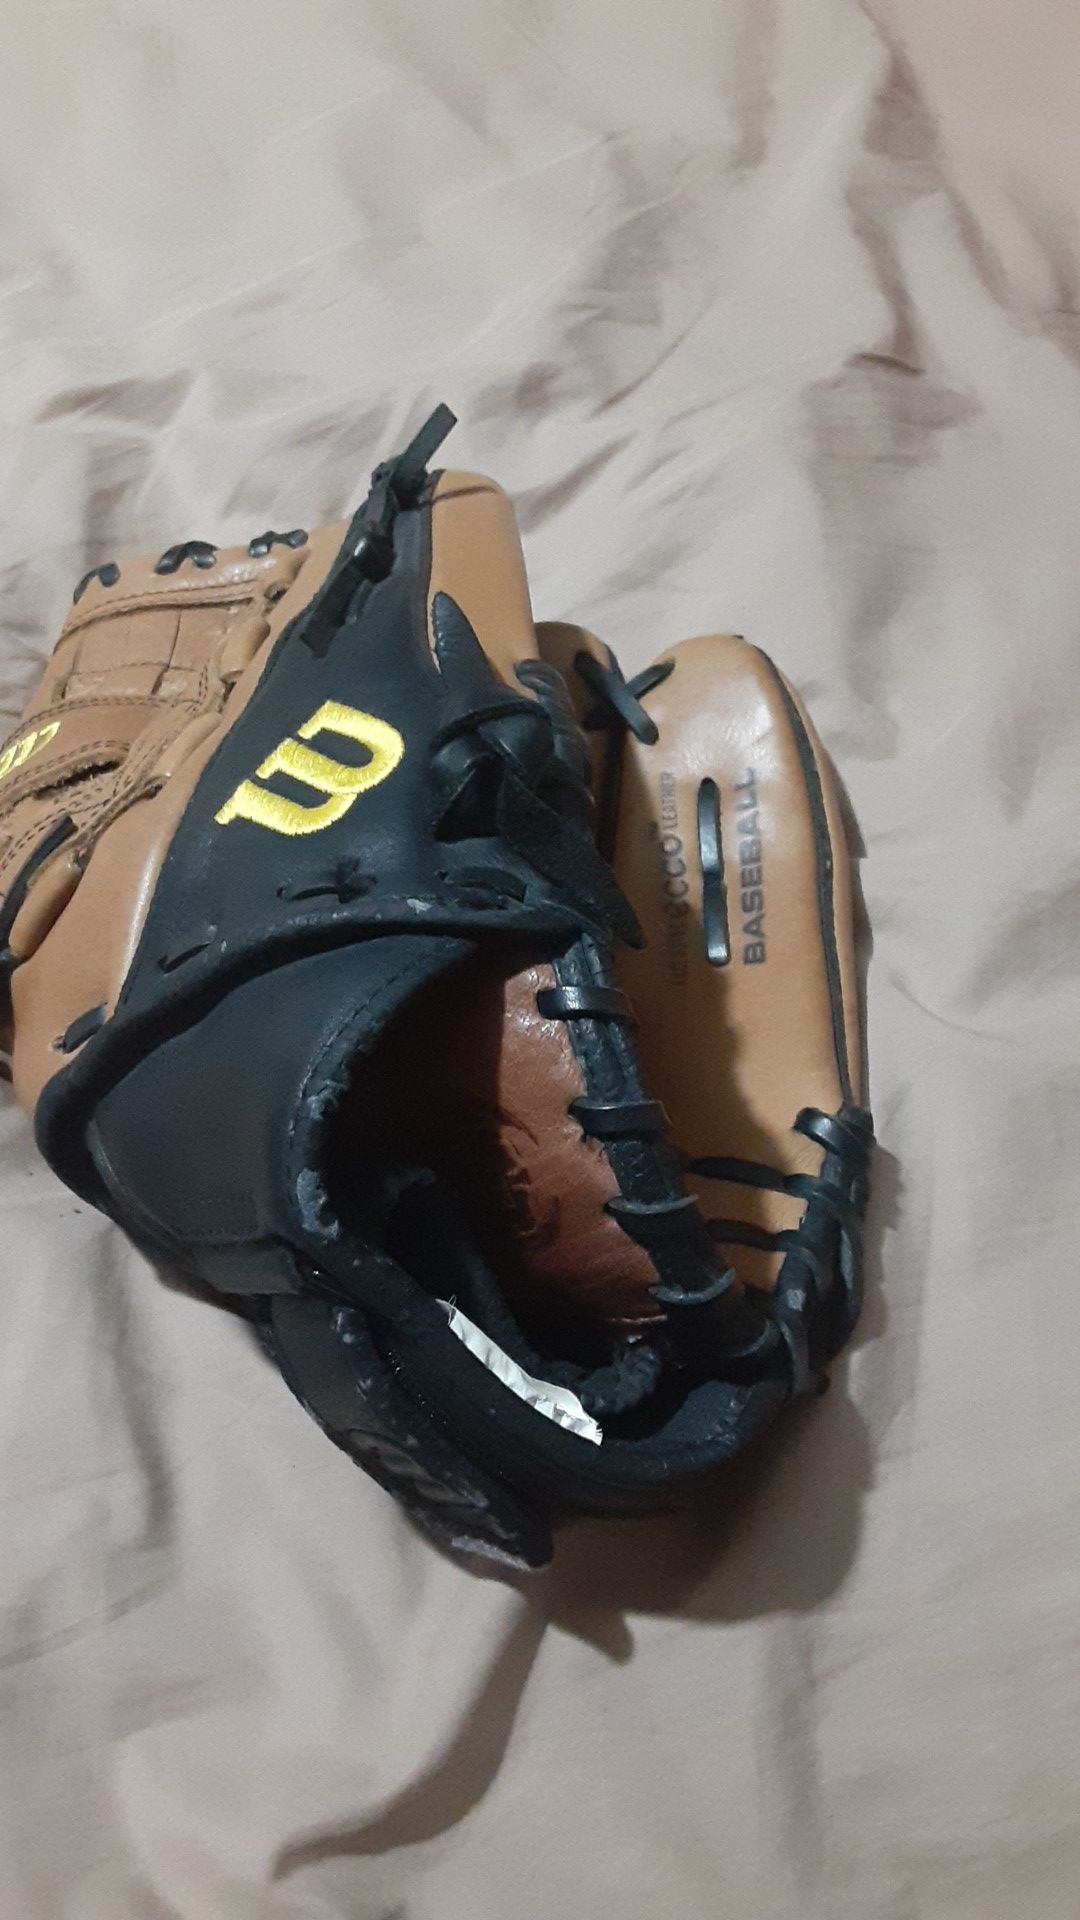 Wilson baseball glove